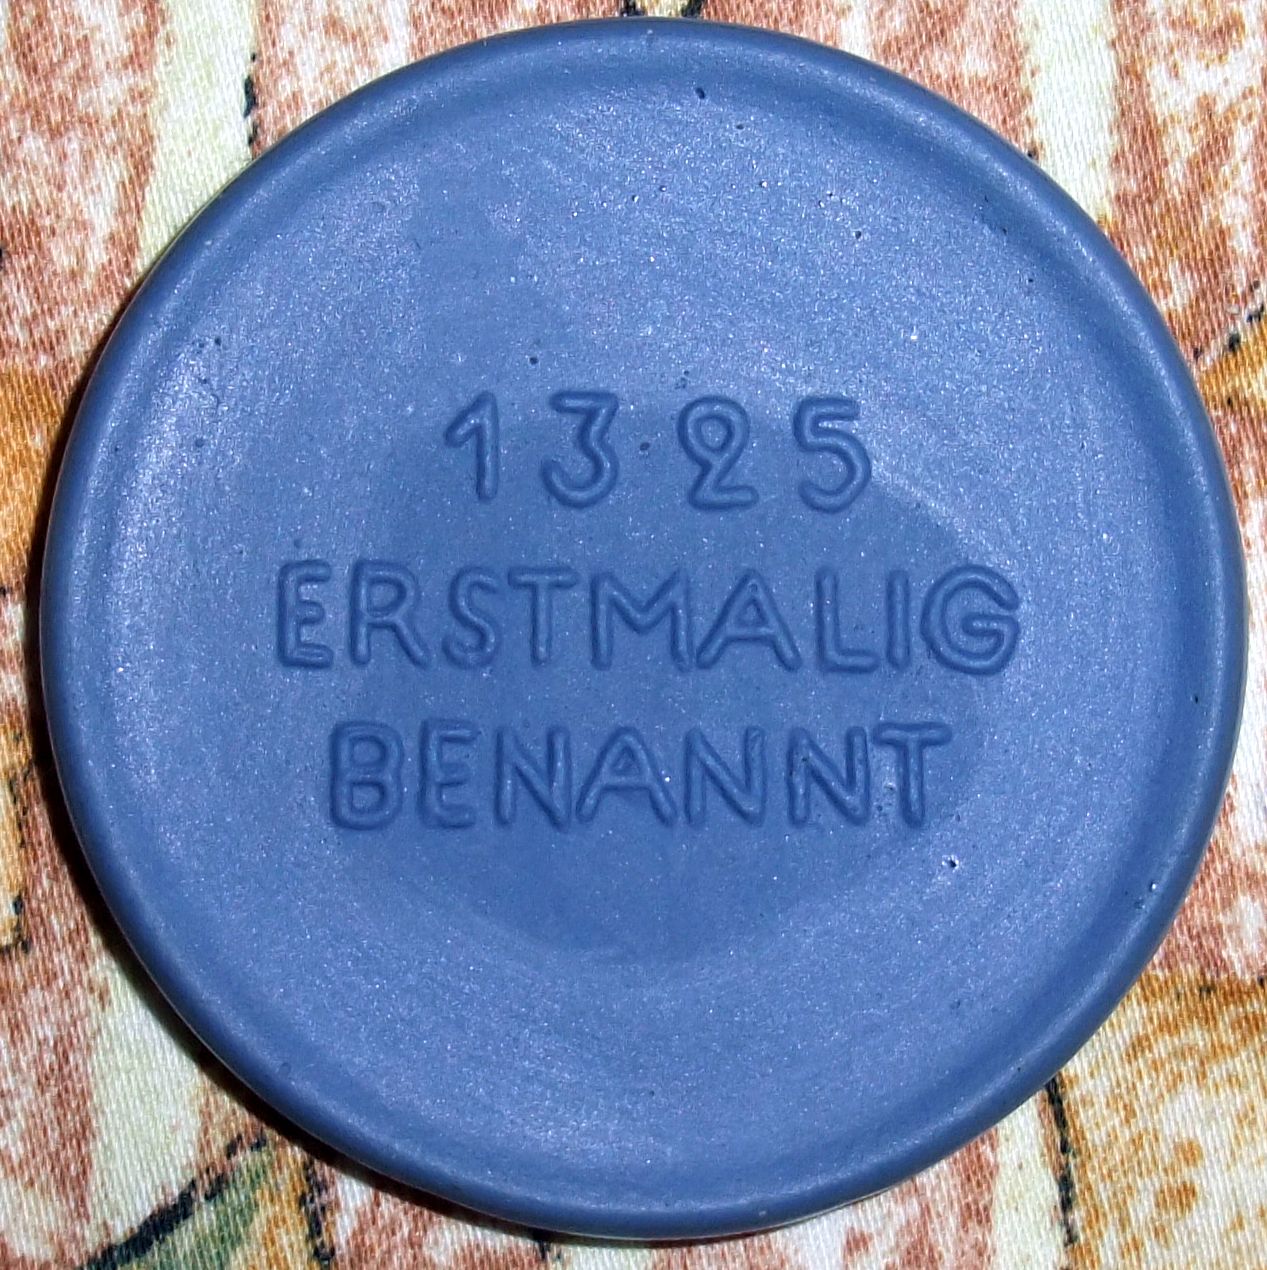 Medaille 650 Jahre Zeulenroda - 1325 - 1975. 1325 erstmals benannt - Rückseite